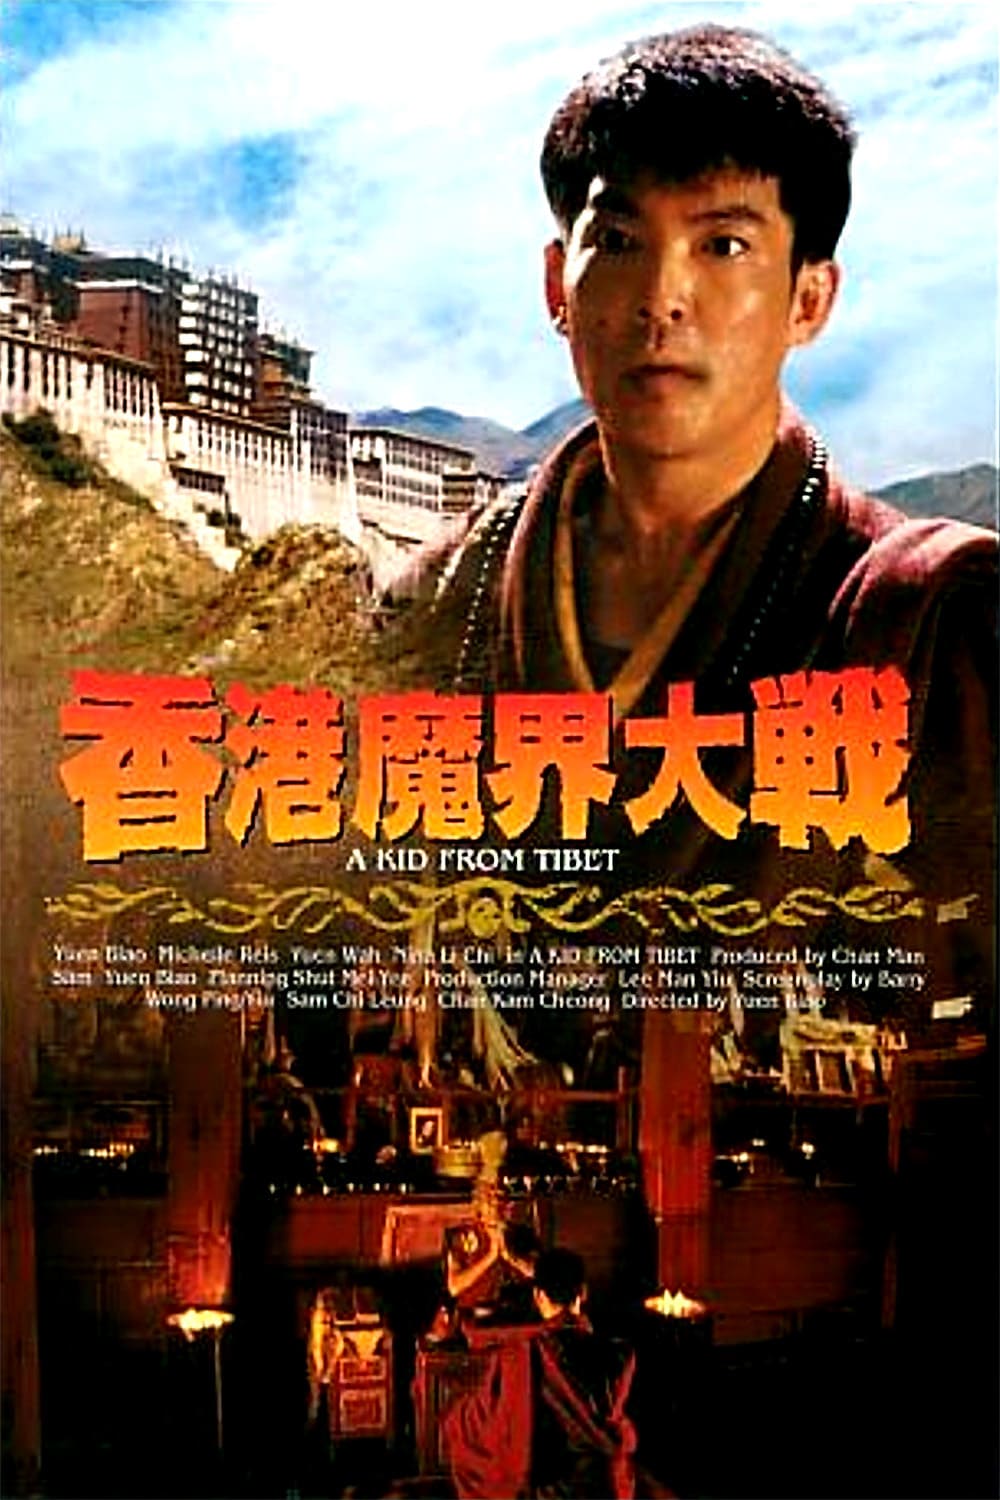 Plakat von "A Kid from Tibet"